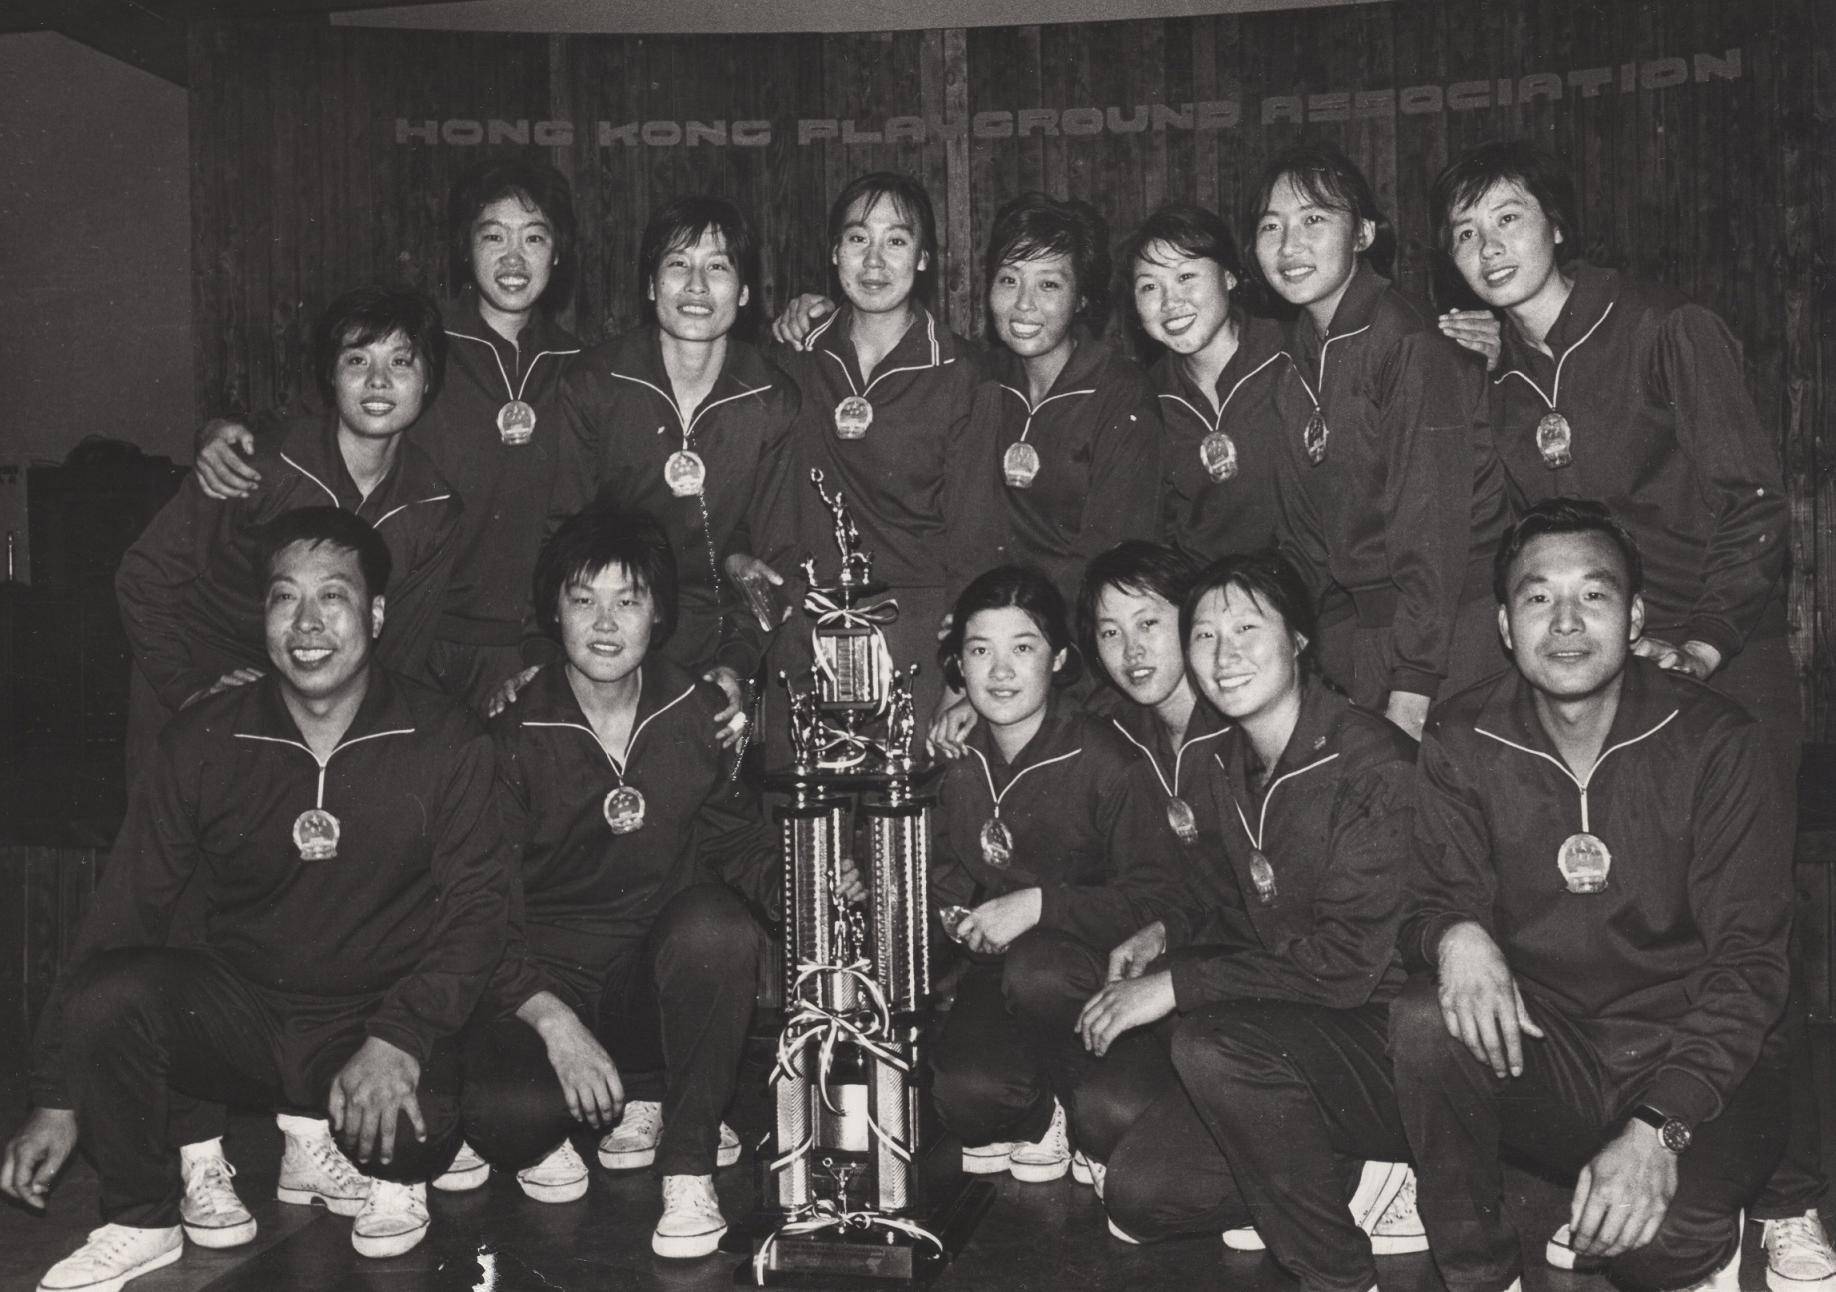 率中国女篮首夺亚锦赛冠军 国家队执教近30载桃李满天下 平易近人的胡利德教练走了